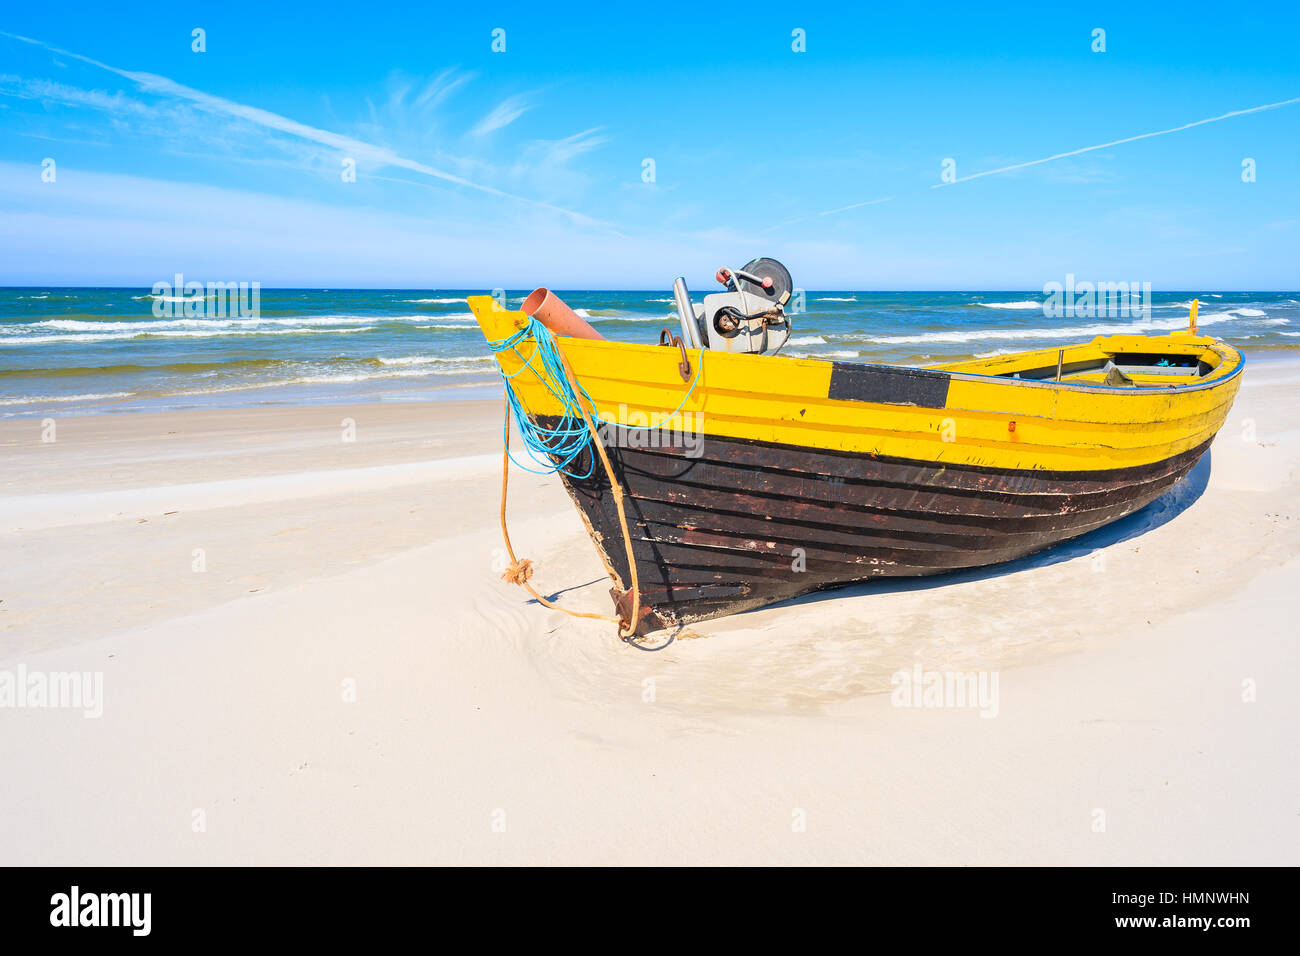 Bateau de pêche colorés sur la plage de sable, côte de Debki Mer Baltique, Pologne Banque D'Images